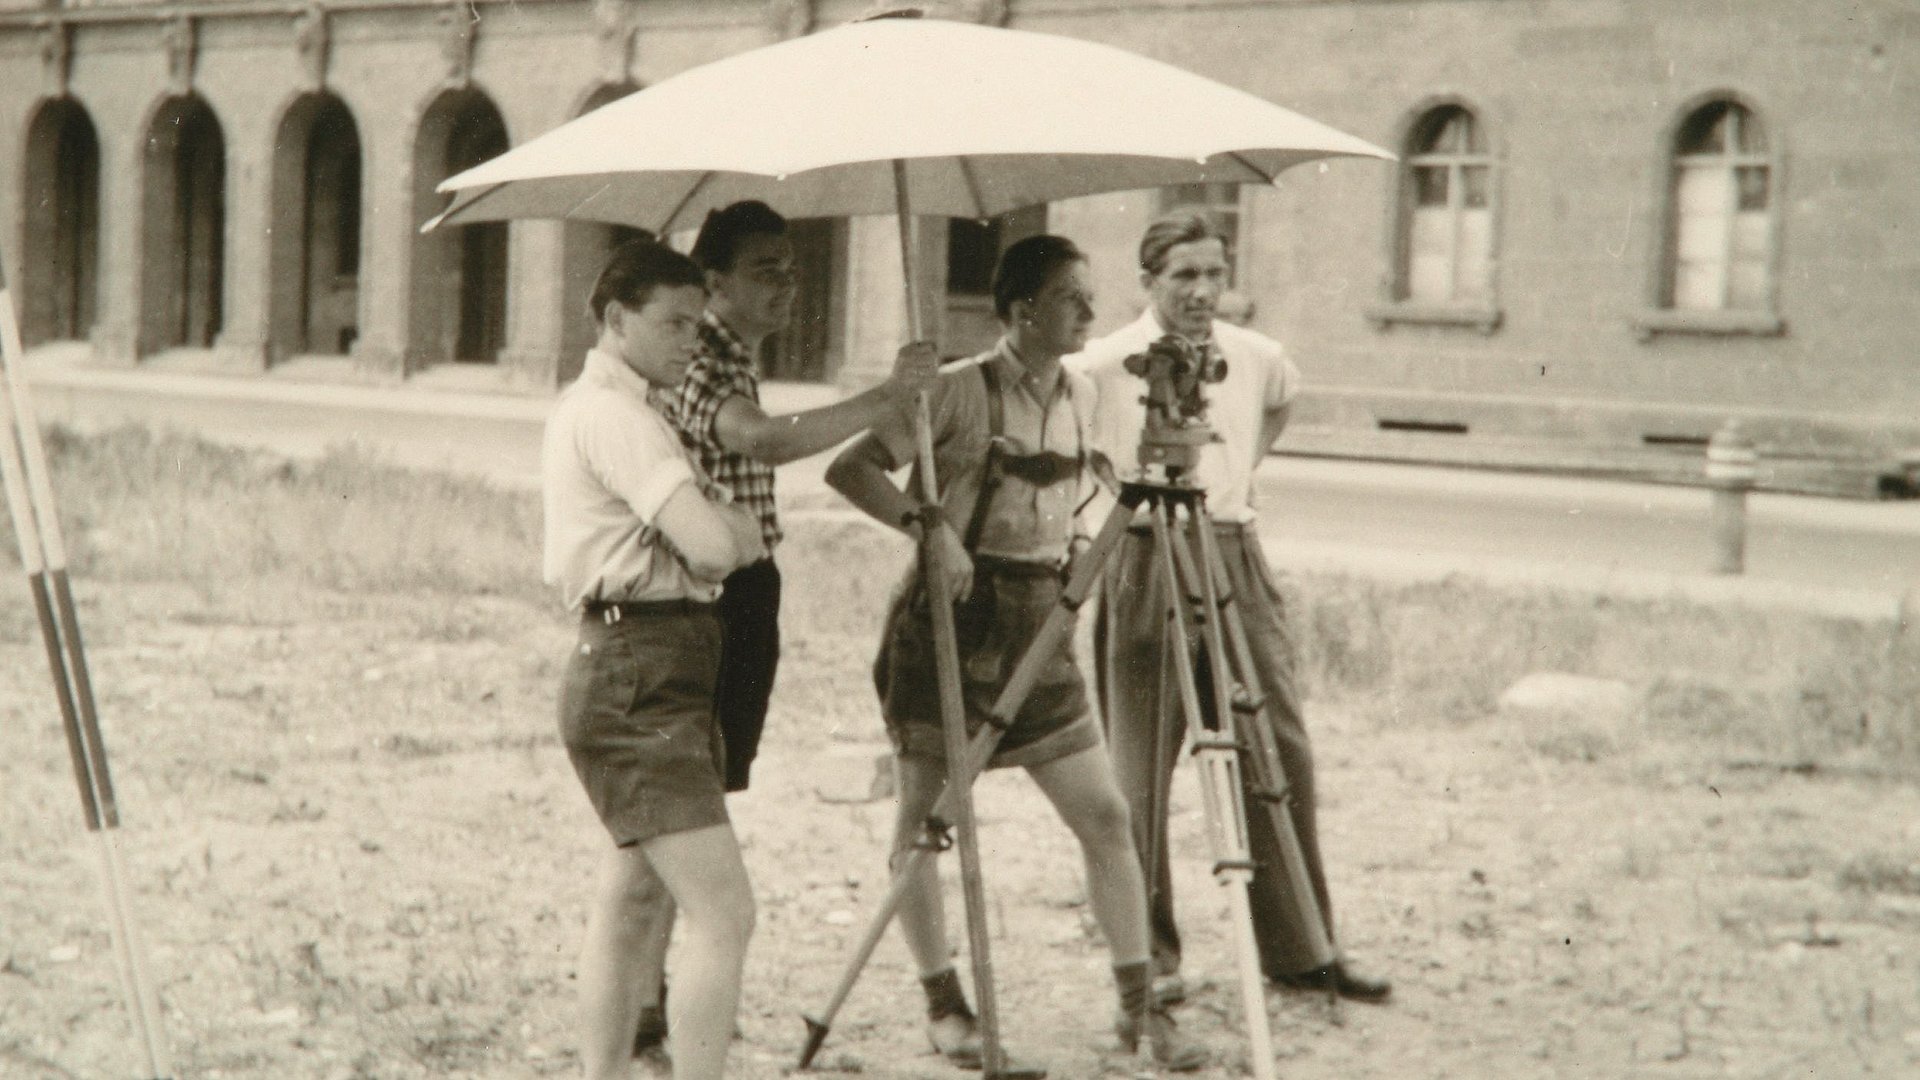 Geodäsie-Übung auf dem Ruinengrundstück vor der Alten Pinakothek im Jahr 1950.